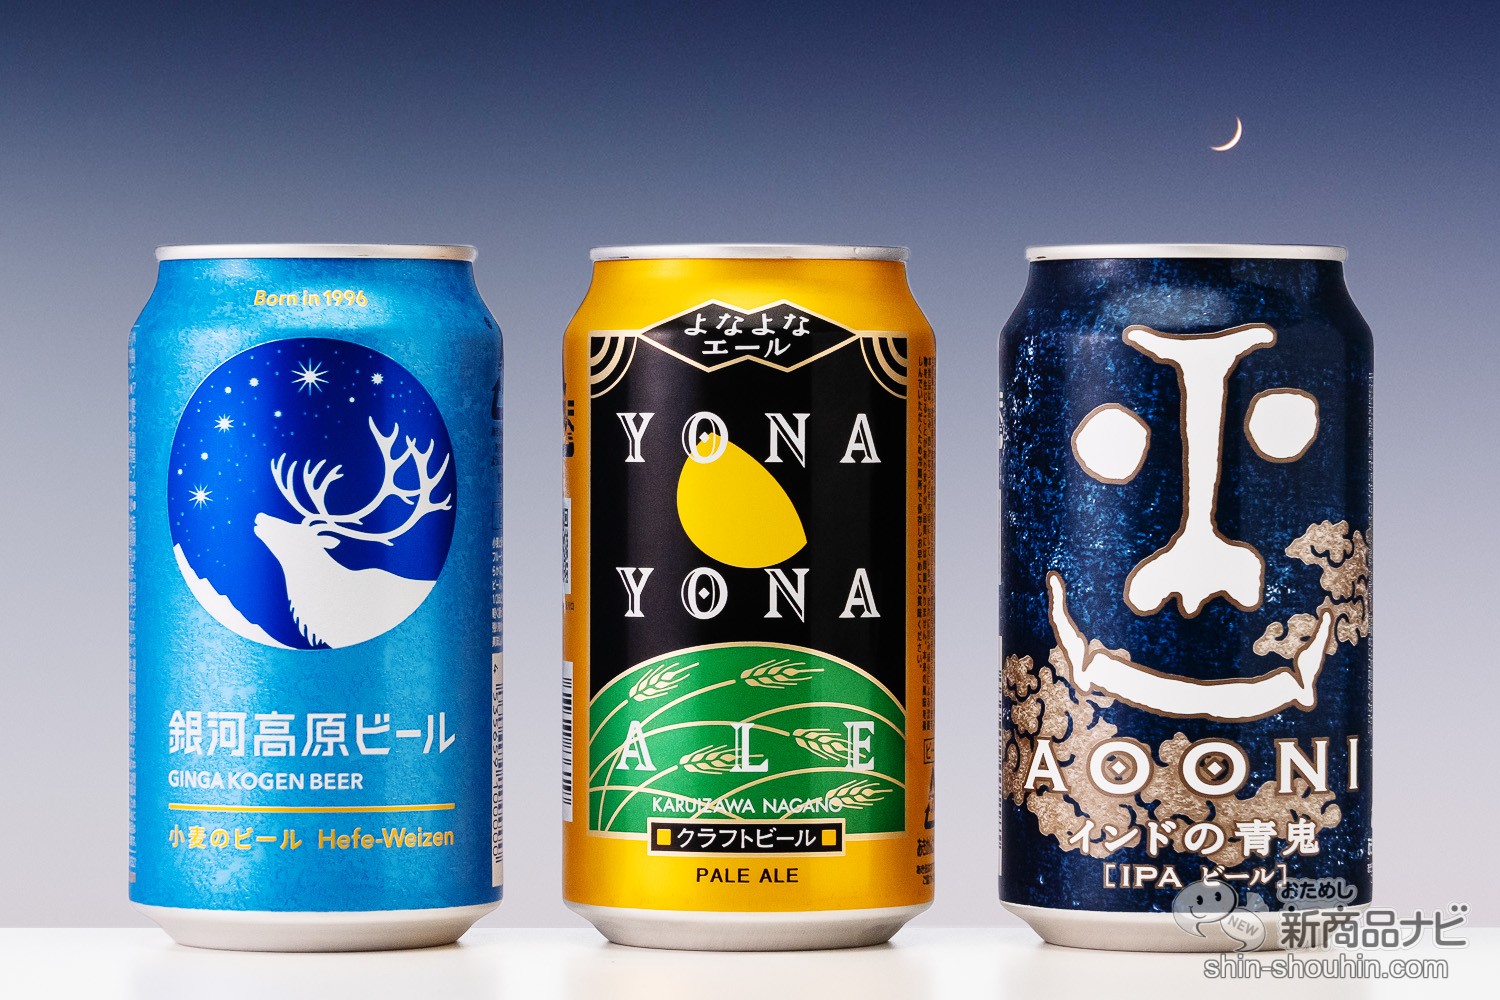 おためし新商品ナビ » Blog Archive » 個性豊かなクラフトビール3種 ...